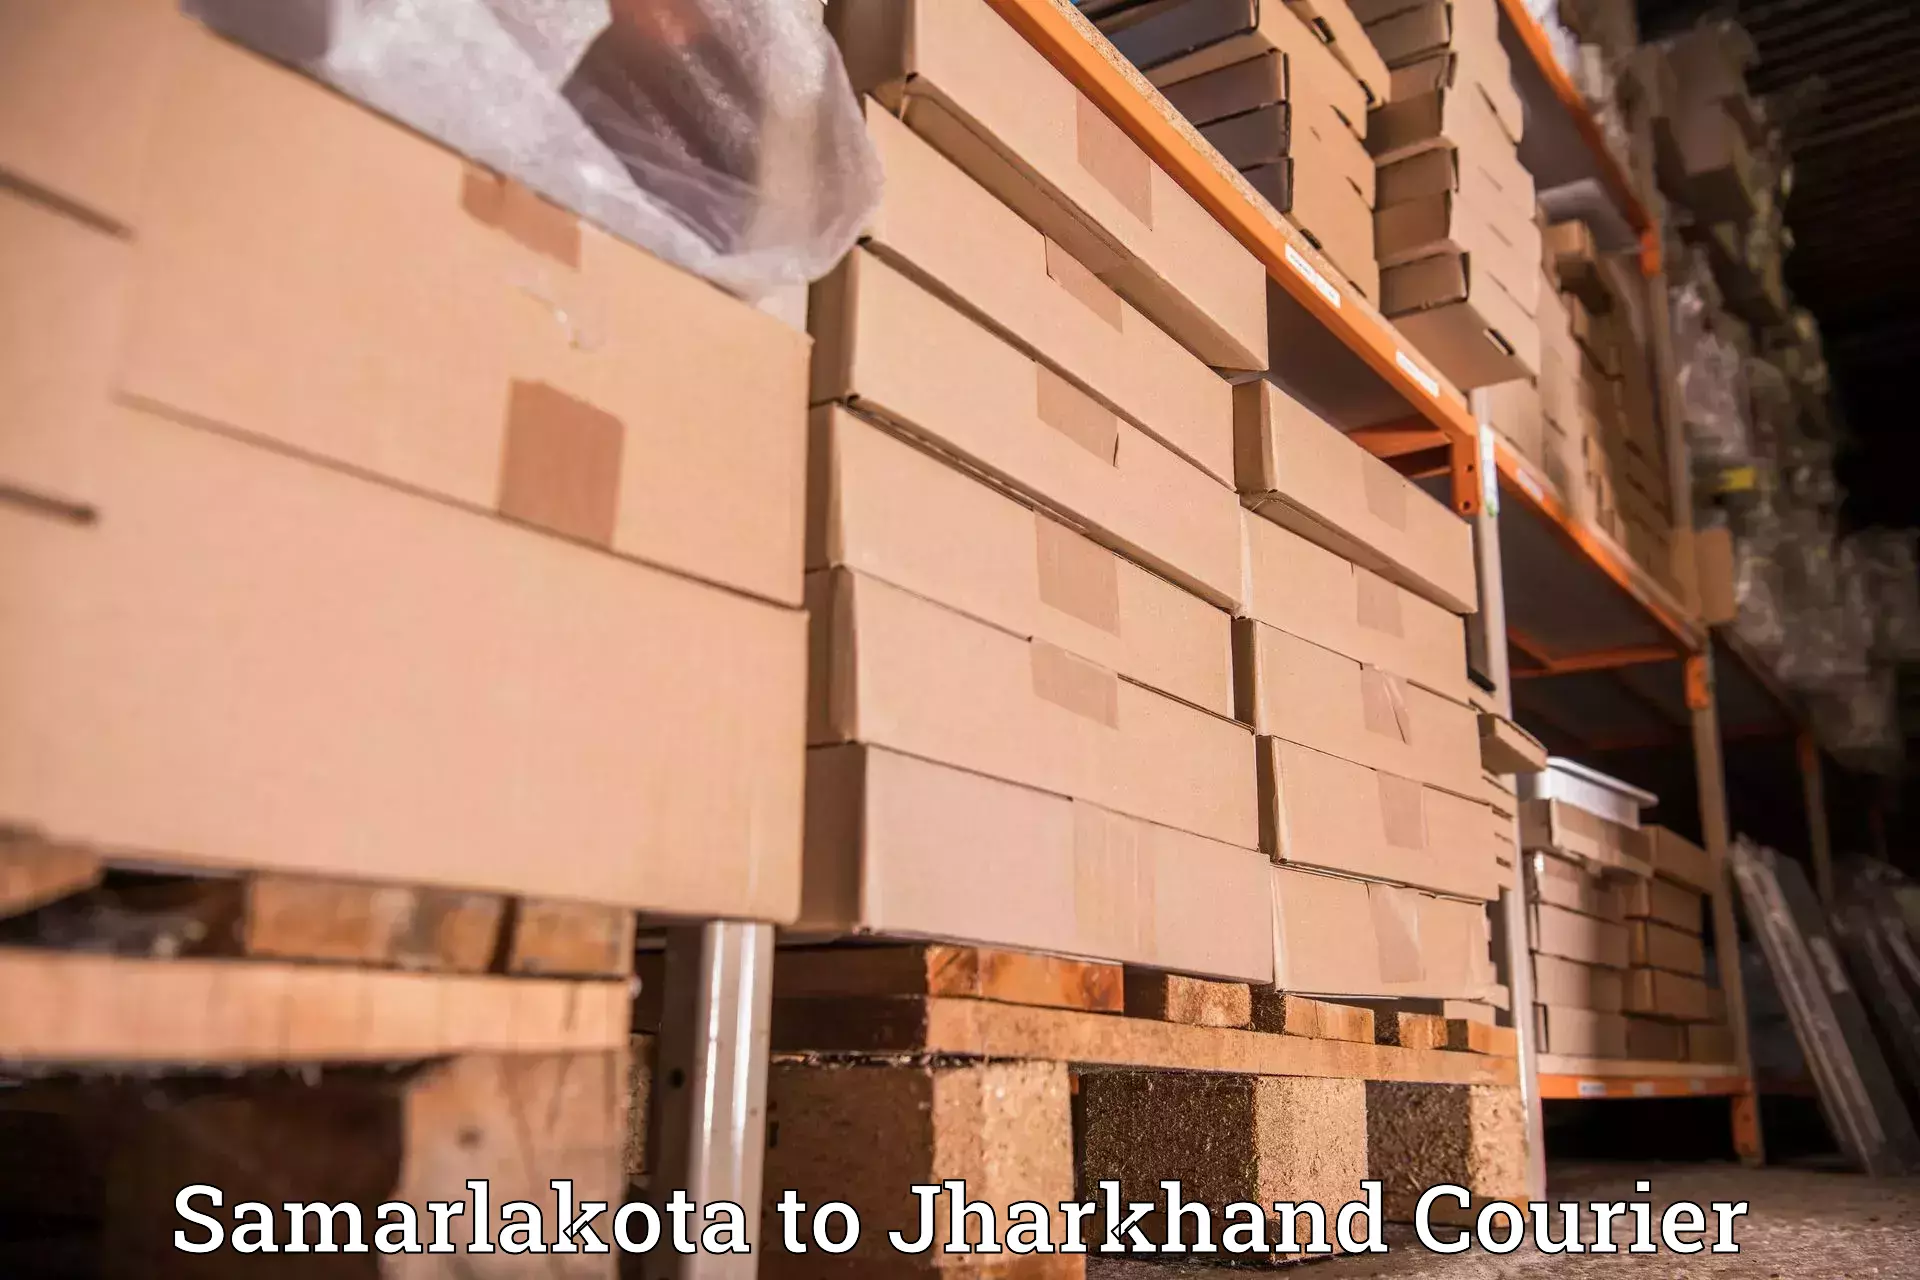 Customer-centric shipping in Samarlakota to Topchanchi